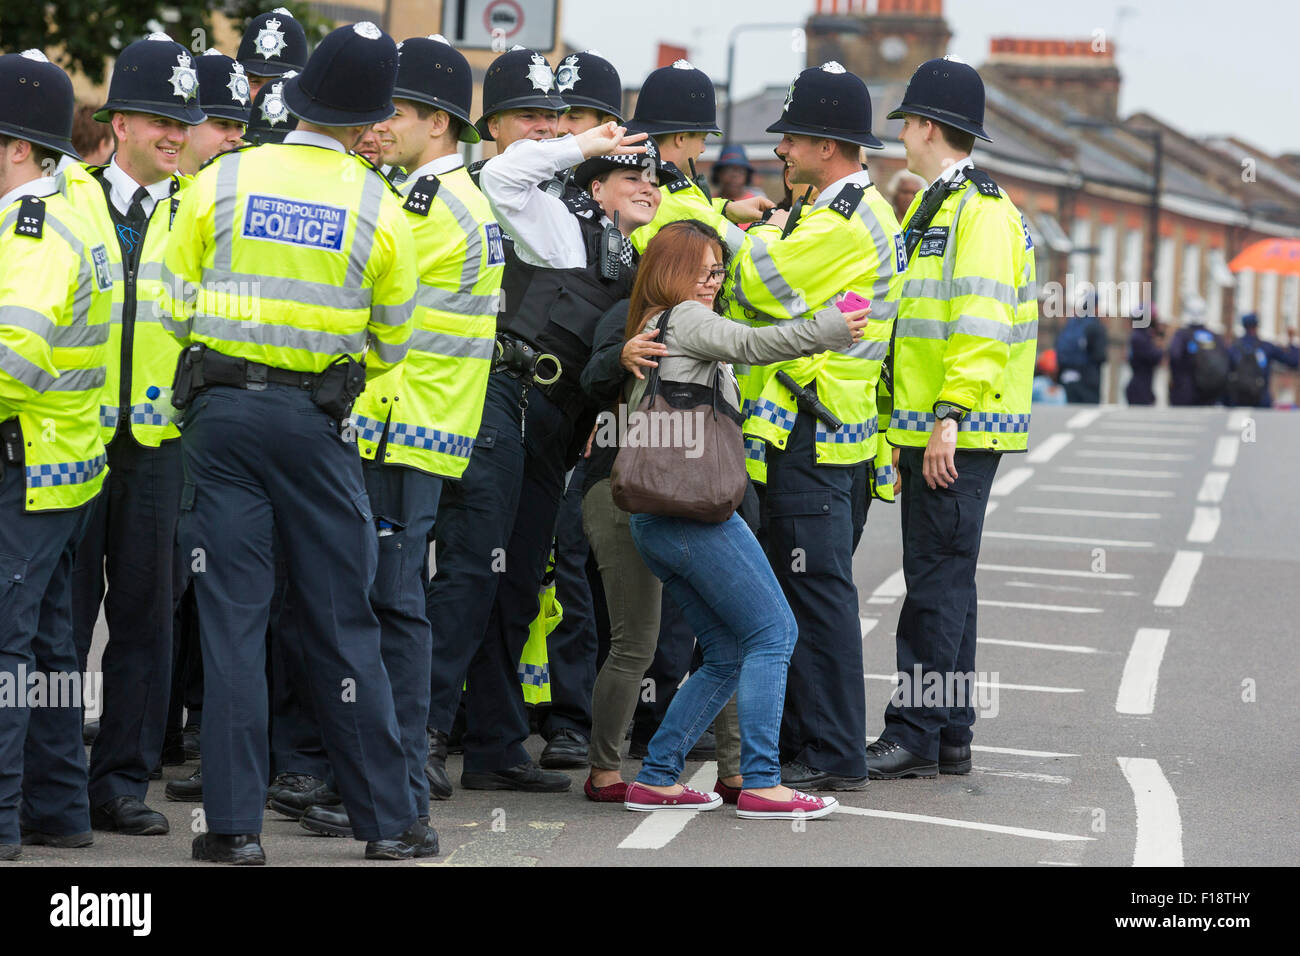 Londra, Regno Unito. Il 30 agosto 2015. Una femmina di funzionario di polizia pone per un selfie con festaioli. Il carnevale di Notting Hill inizia con le sfilate in giornata per i bambini. Foto: bas/Alamy Live News Foto Stock